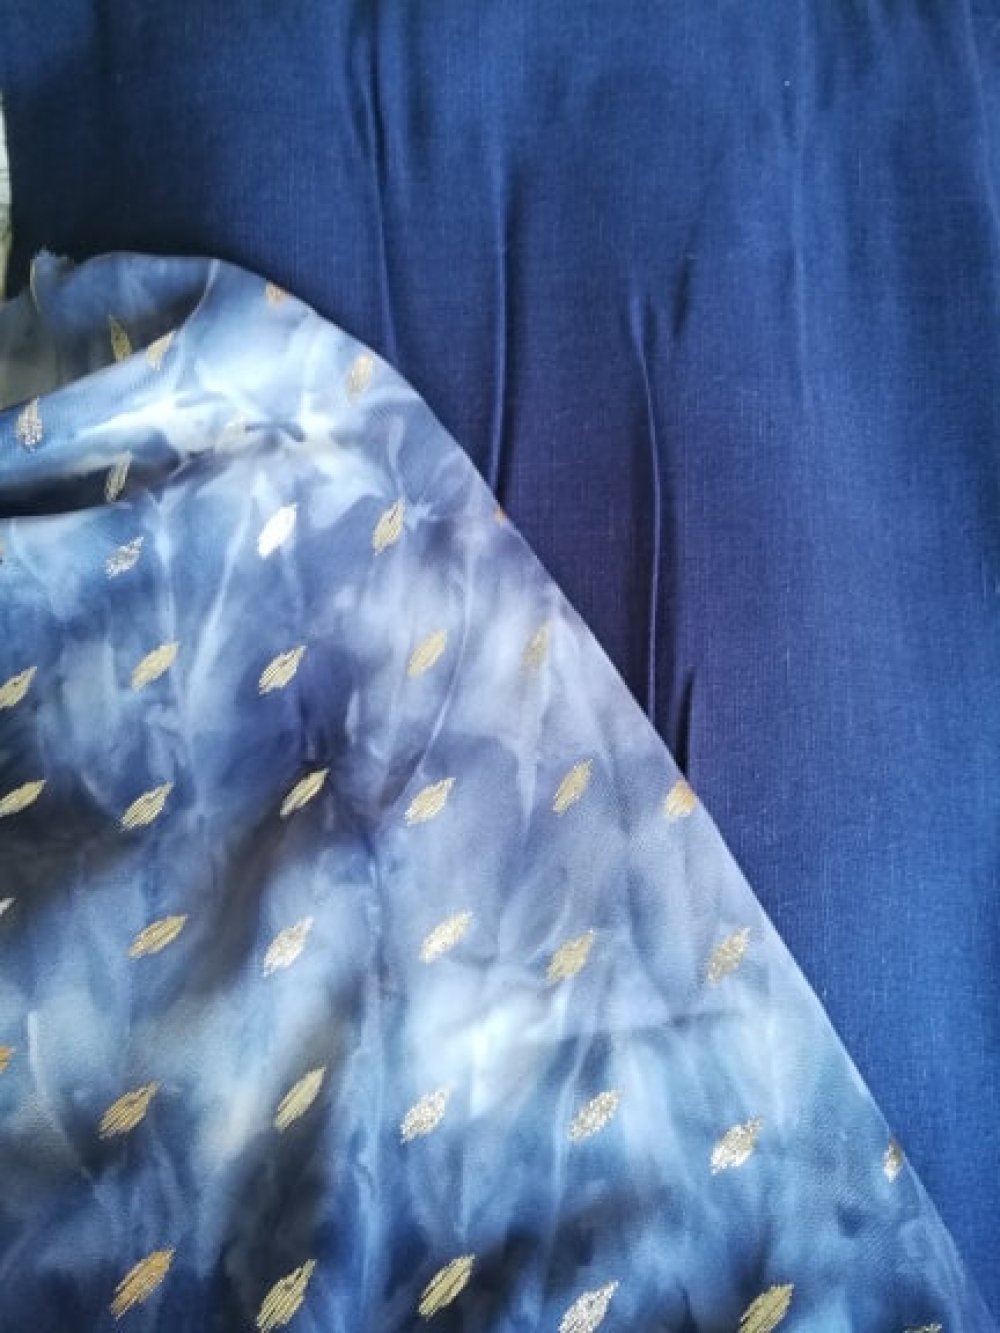 Solde pour Robe courte style années 20 bleue marine--9996137570657